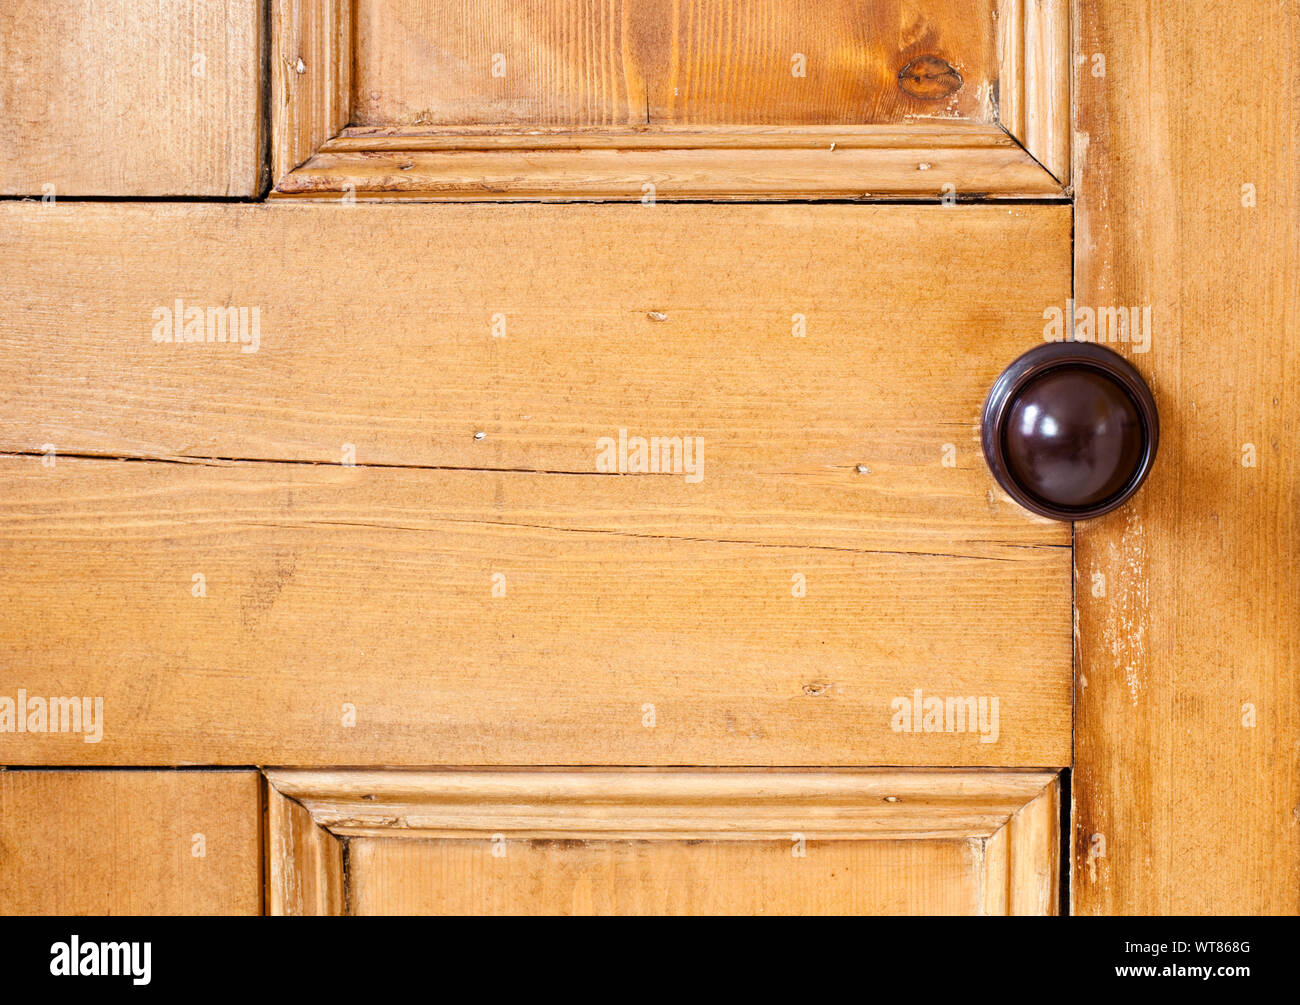 Section of an old wooden internal door with a bakelite door knob Stock Photo